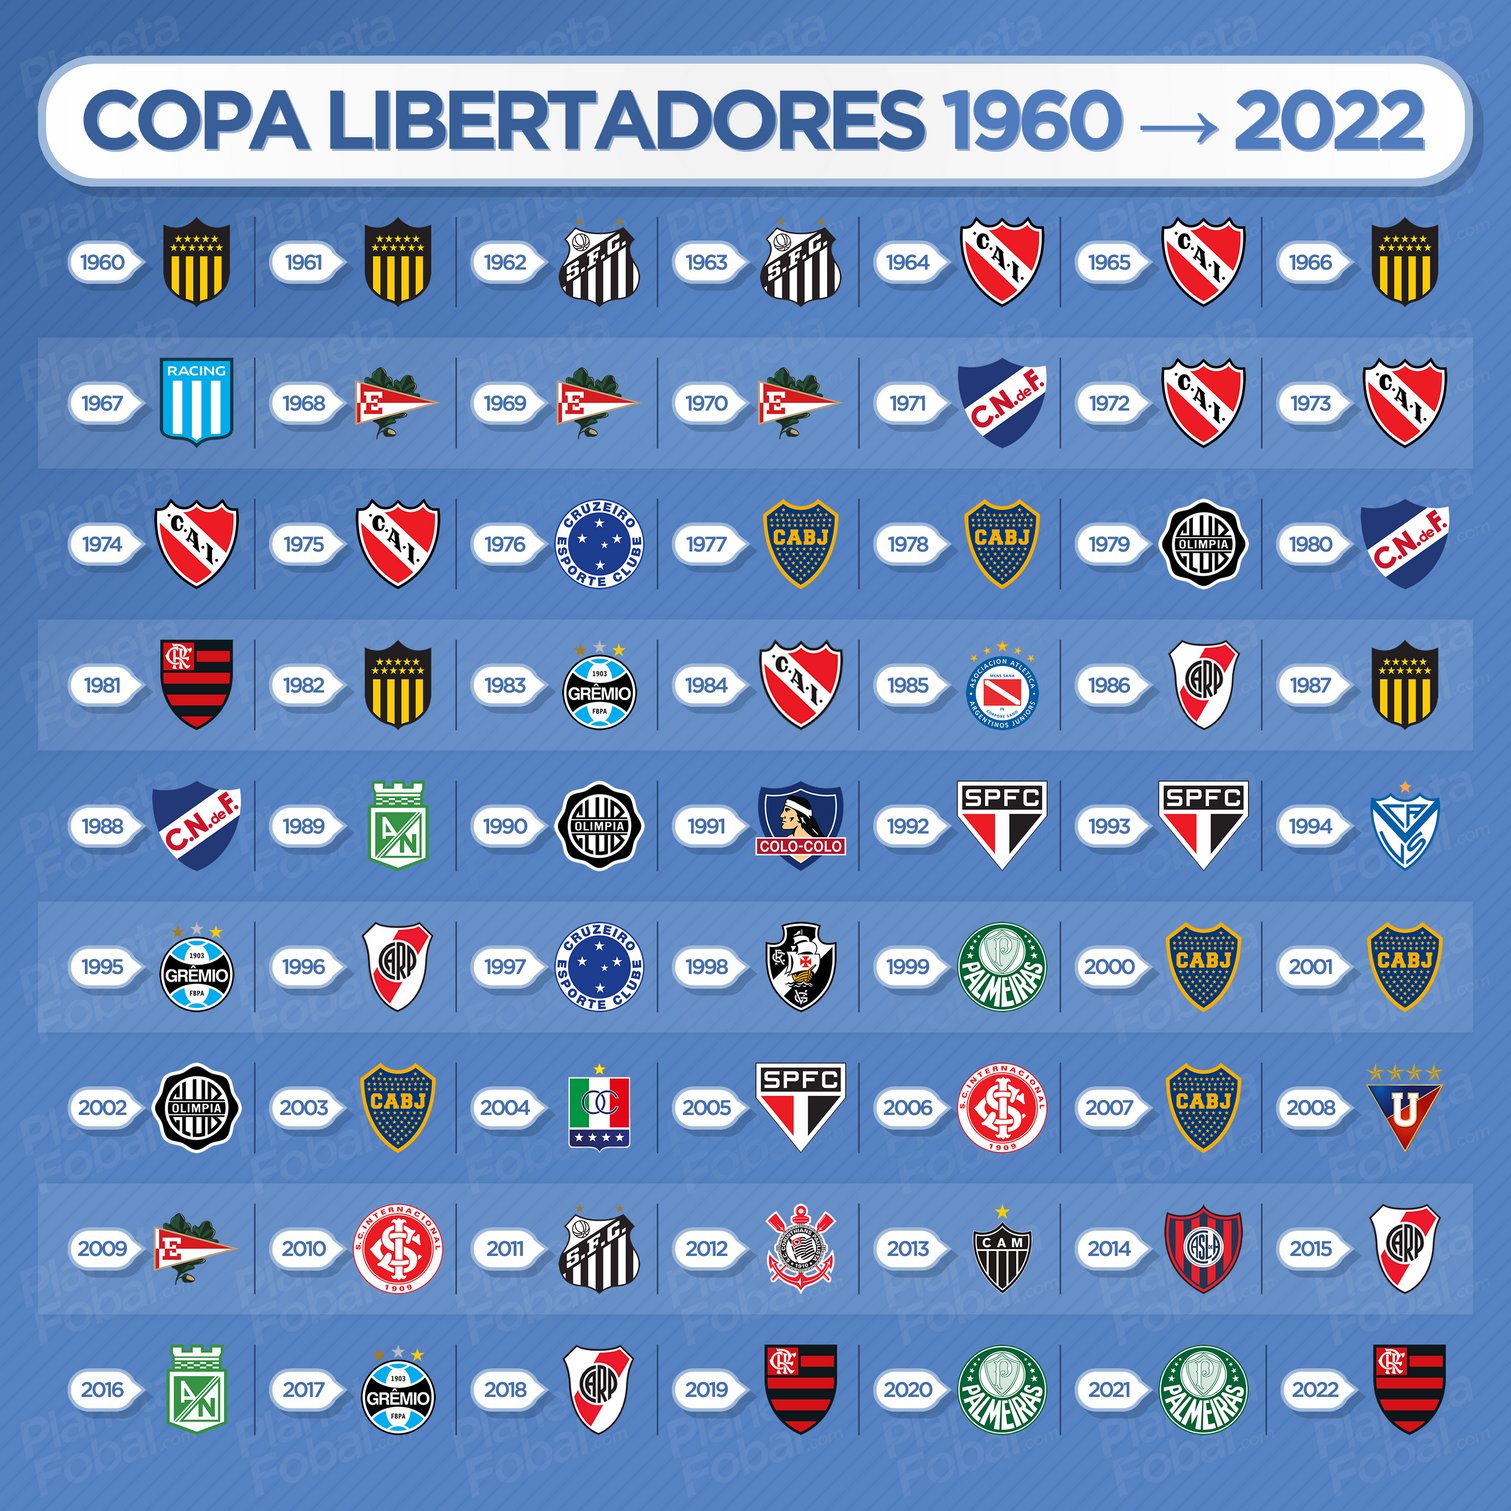 Campeones de la Copa Libertadores 1960 → 2022